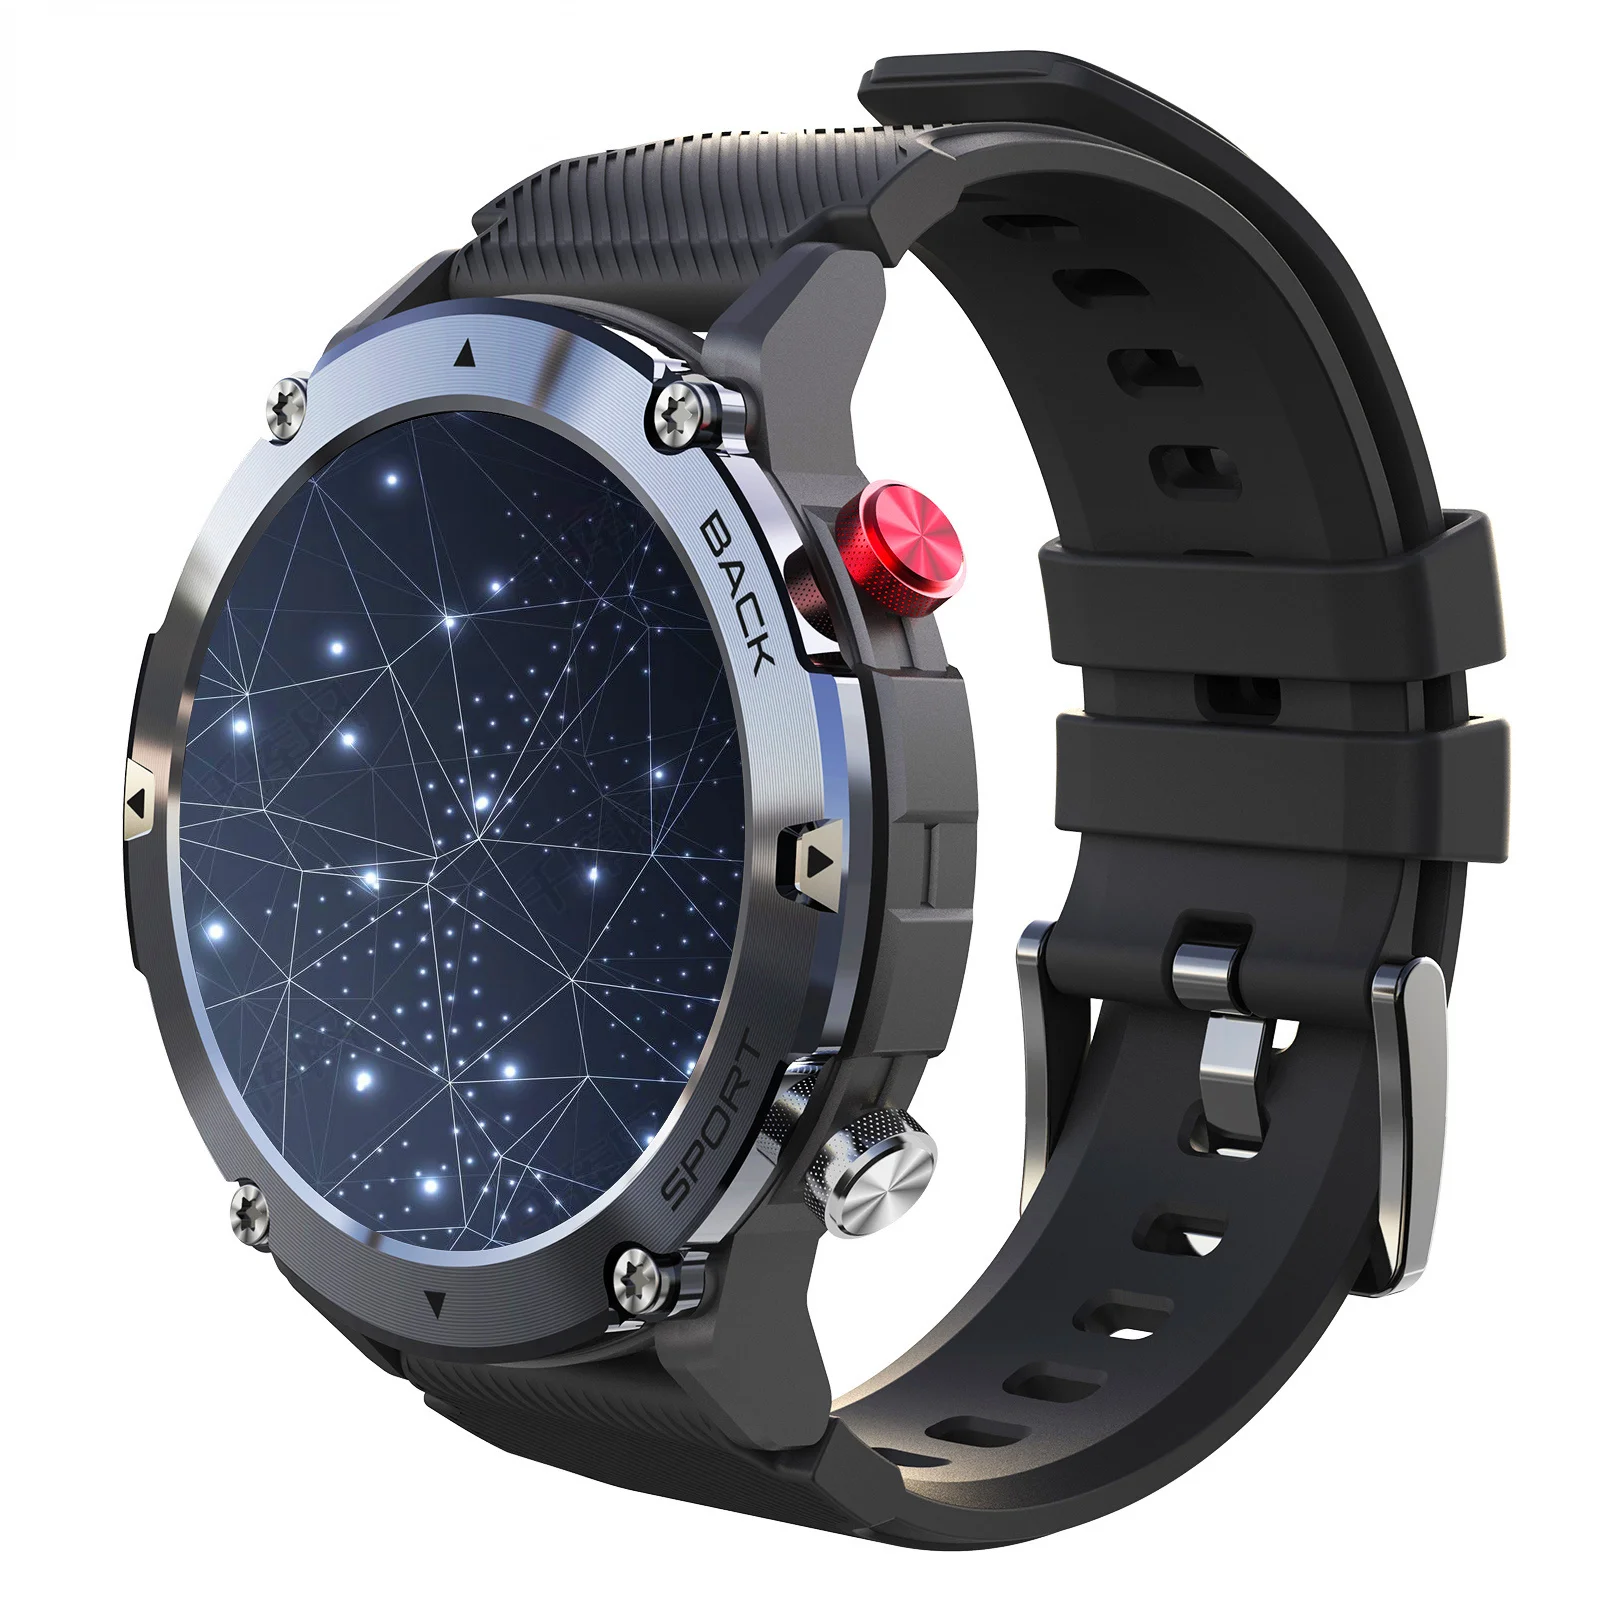 

lf26max Reloj intelligent Hombre relogi intelligent smart watch Llamada Bluetooth relojes intelligent Esfera de Reloj Genuine